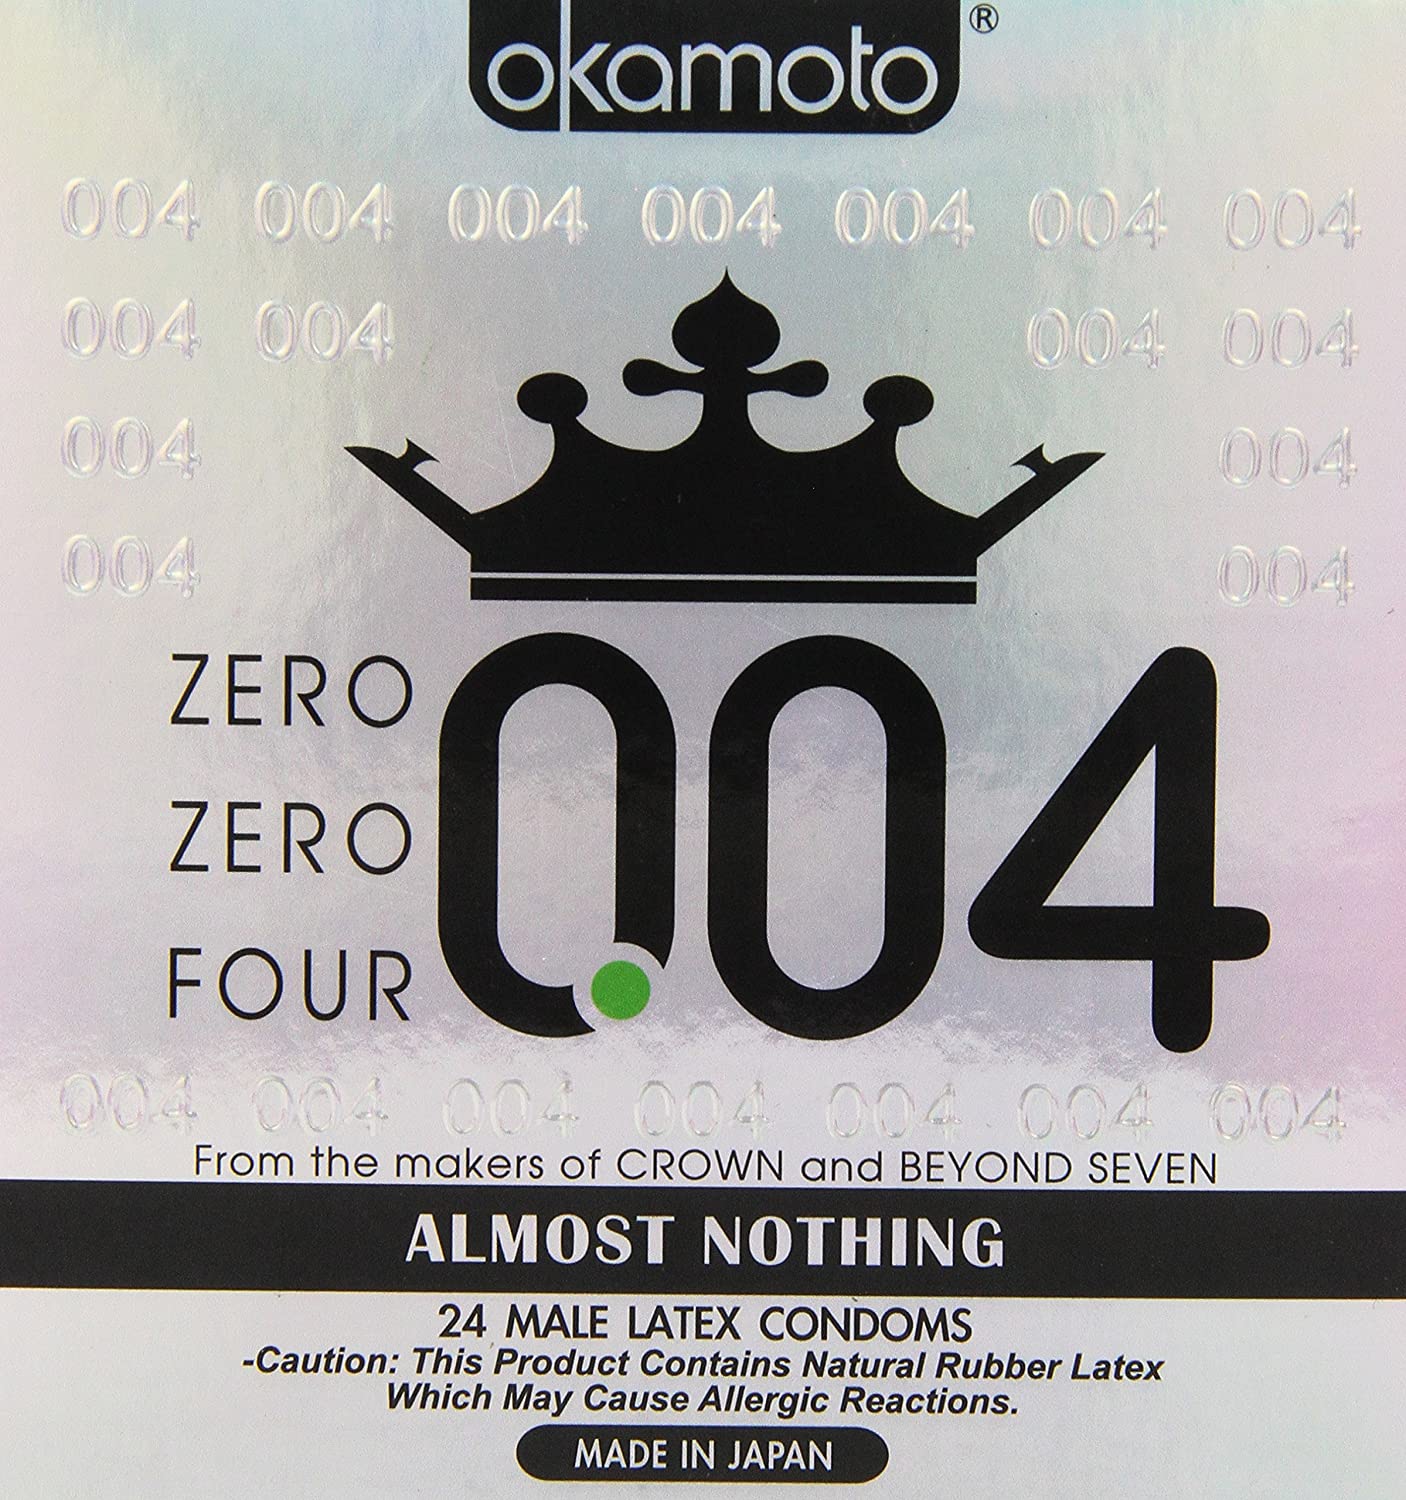 OKAMOTO 004 Male Latex Condoms, White - 24 count